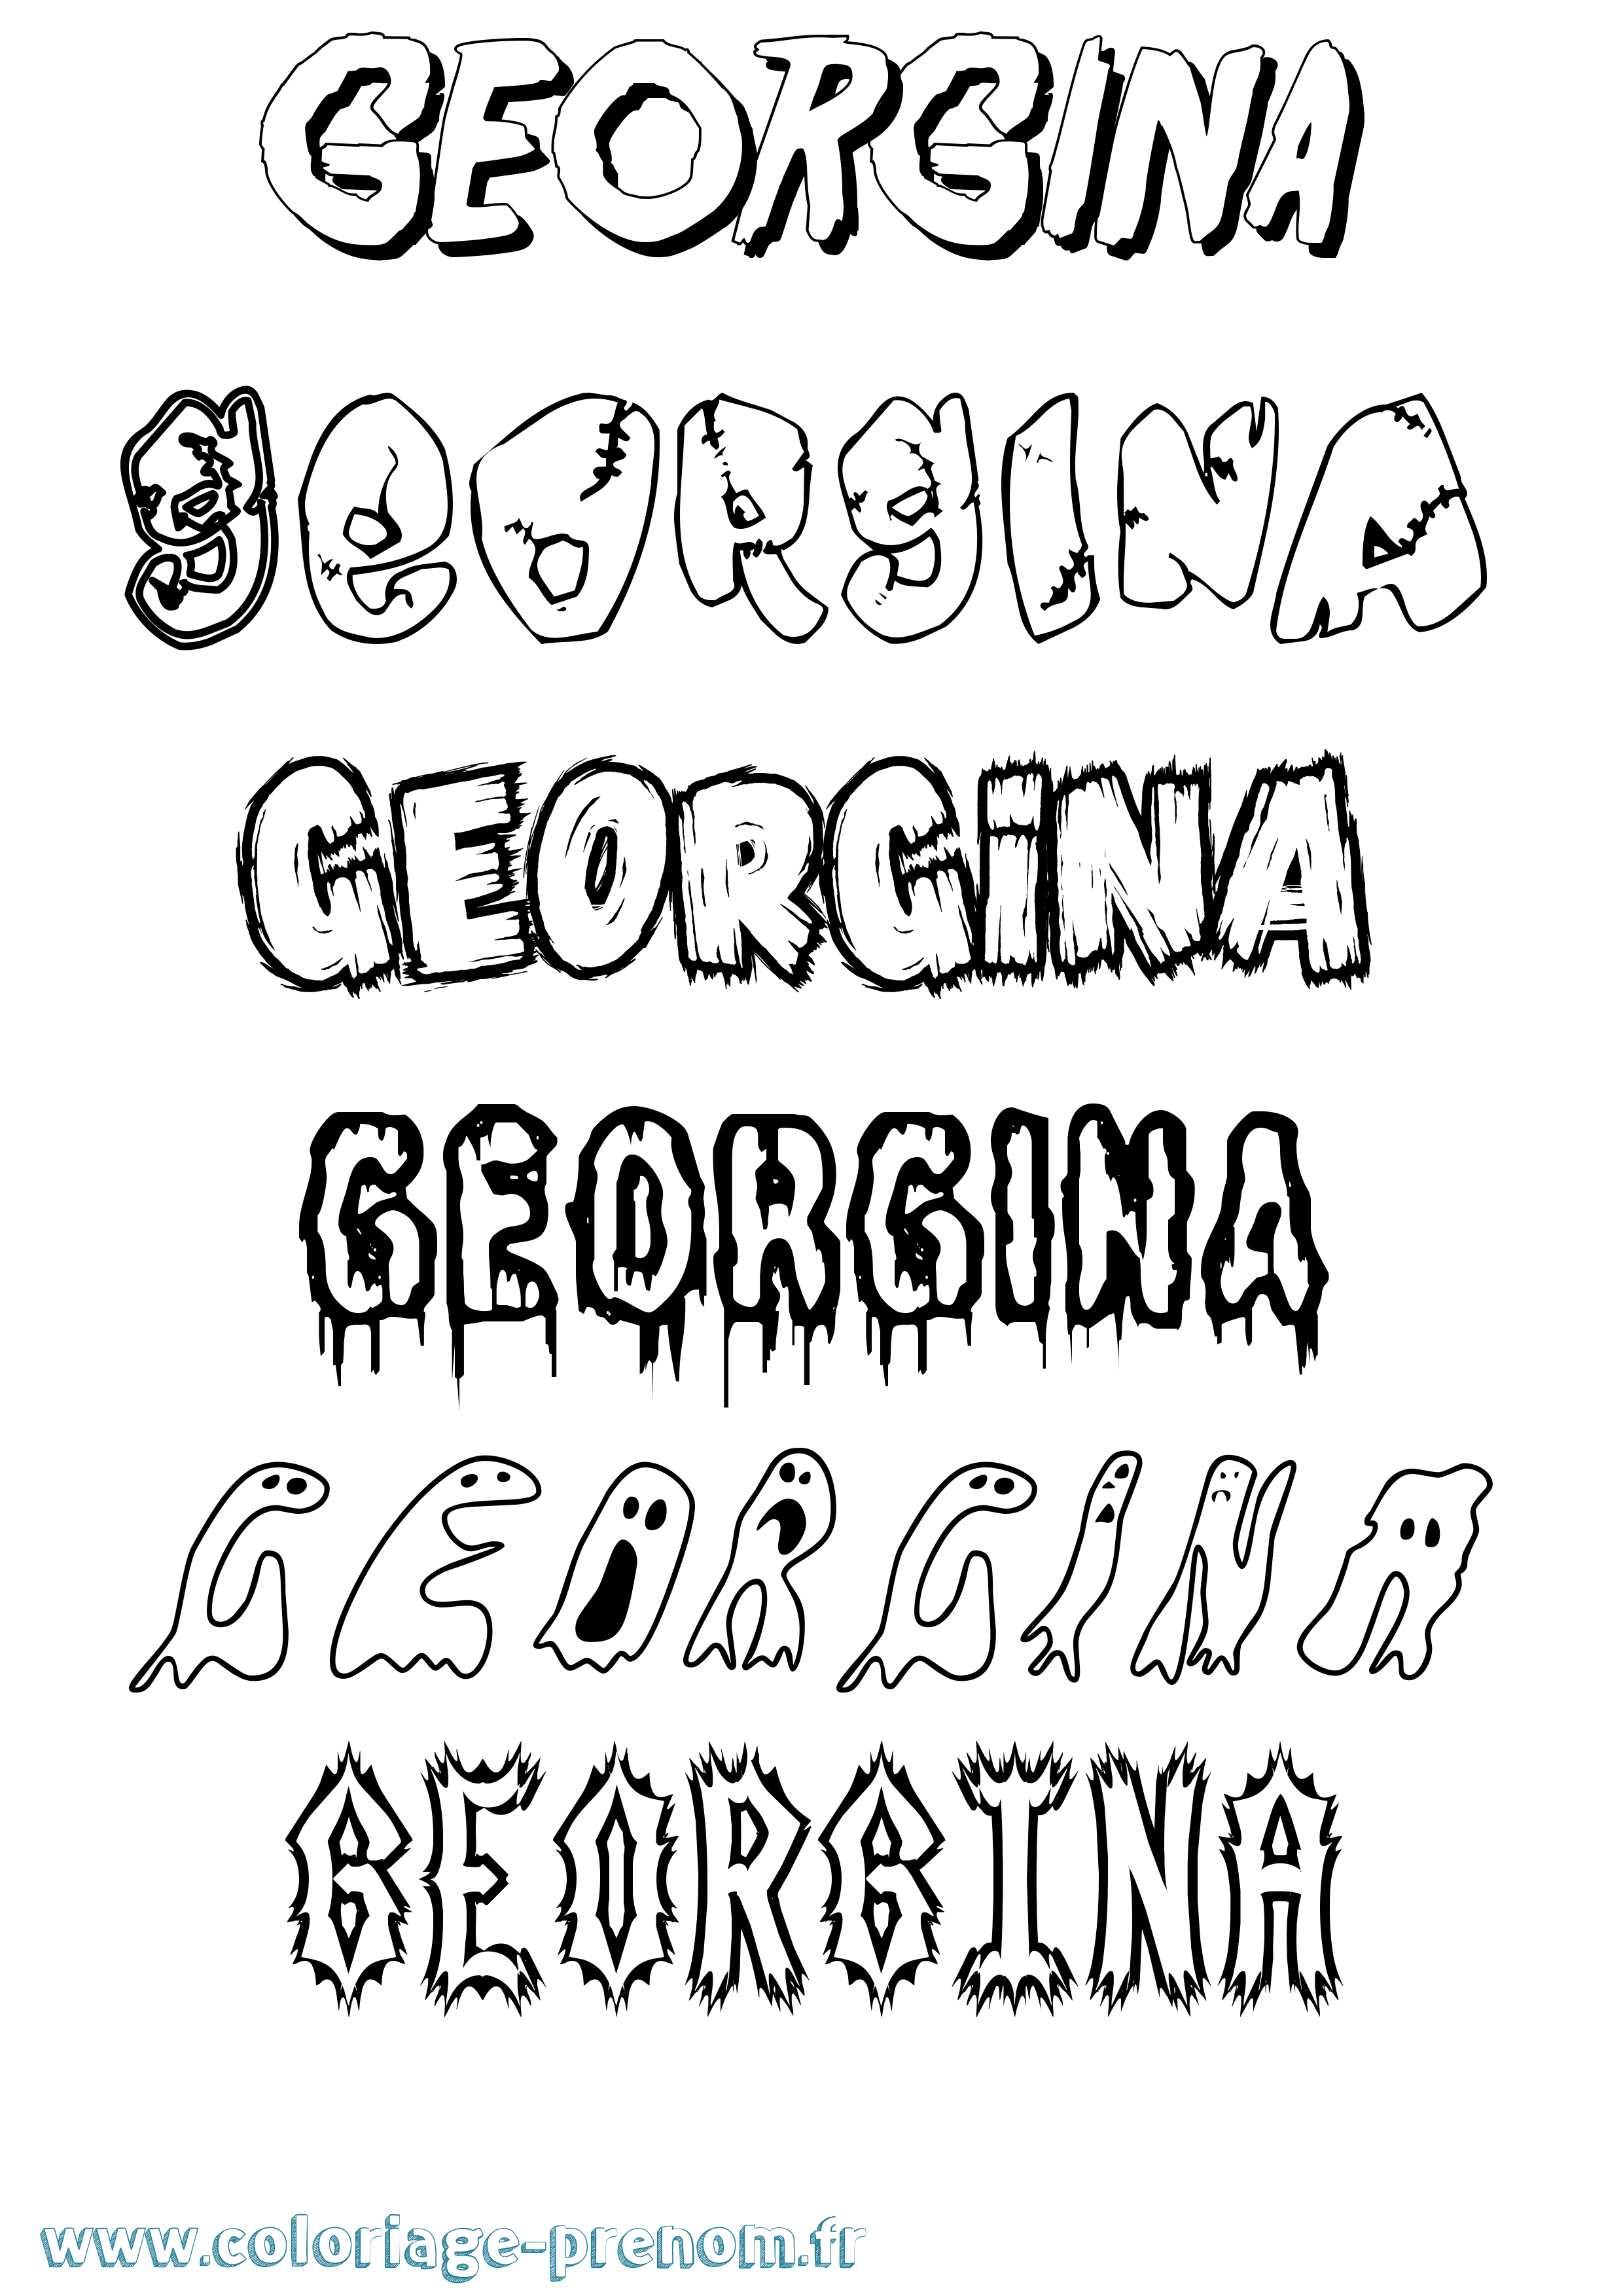 Coloriage prénom Georgina Frisson